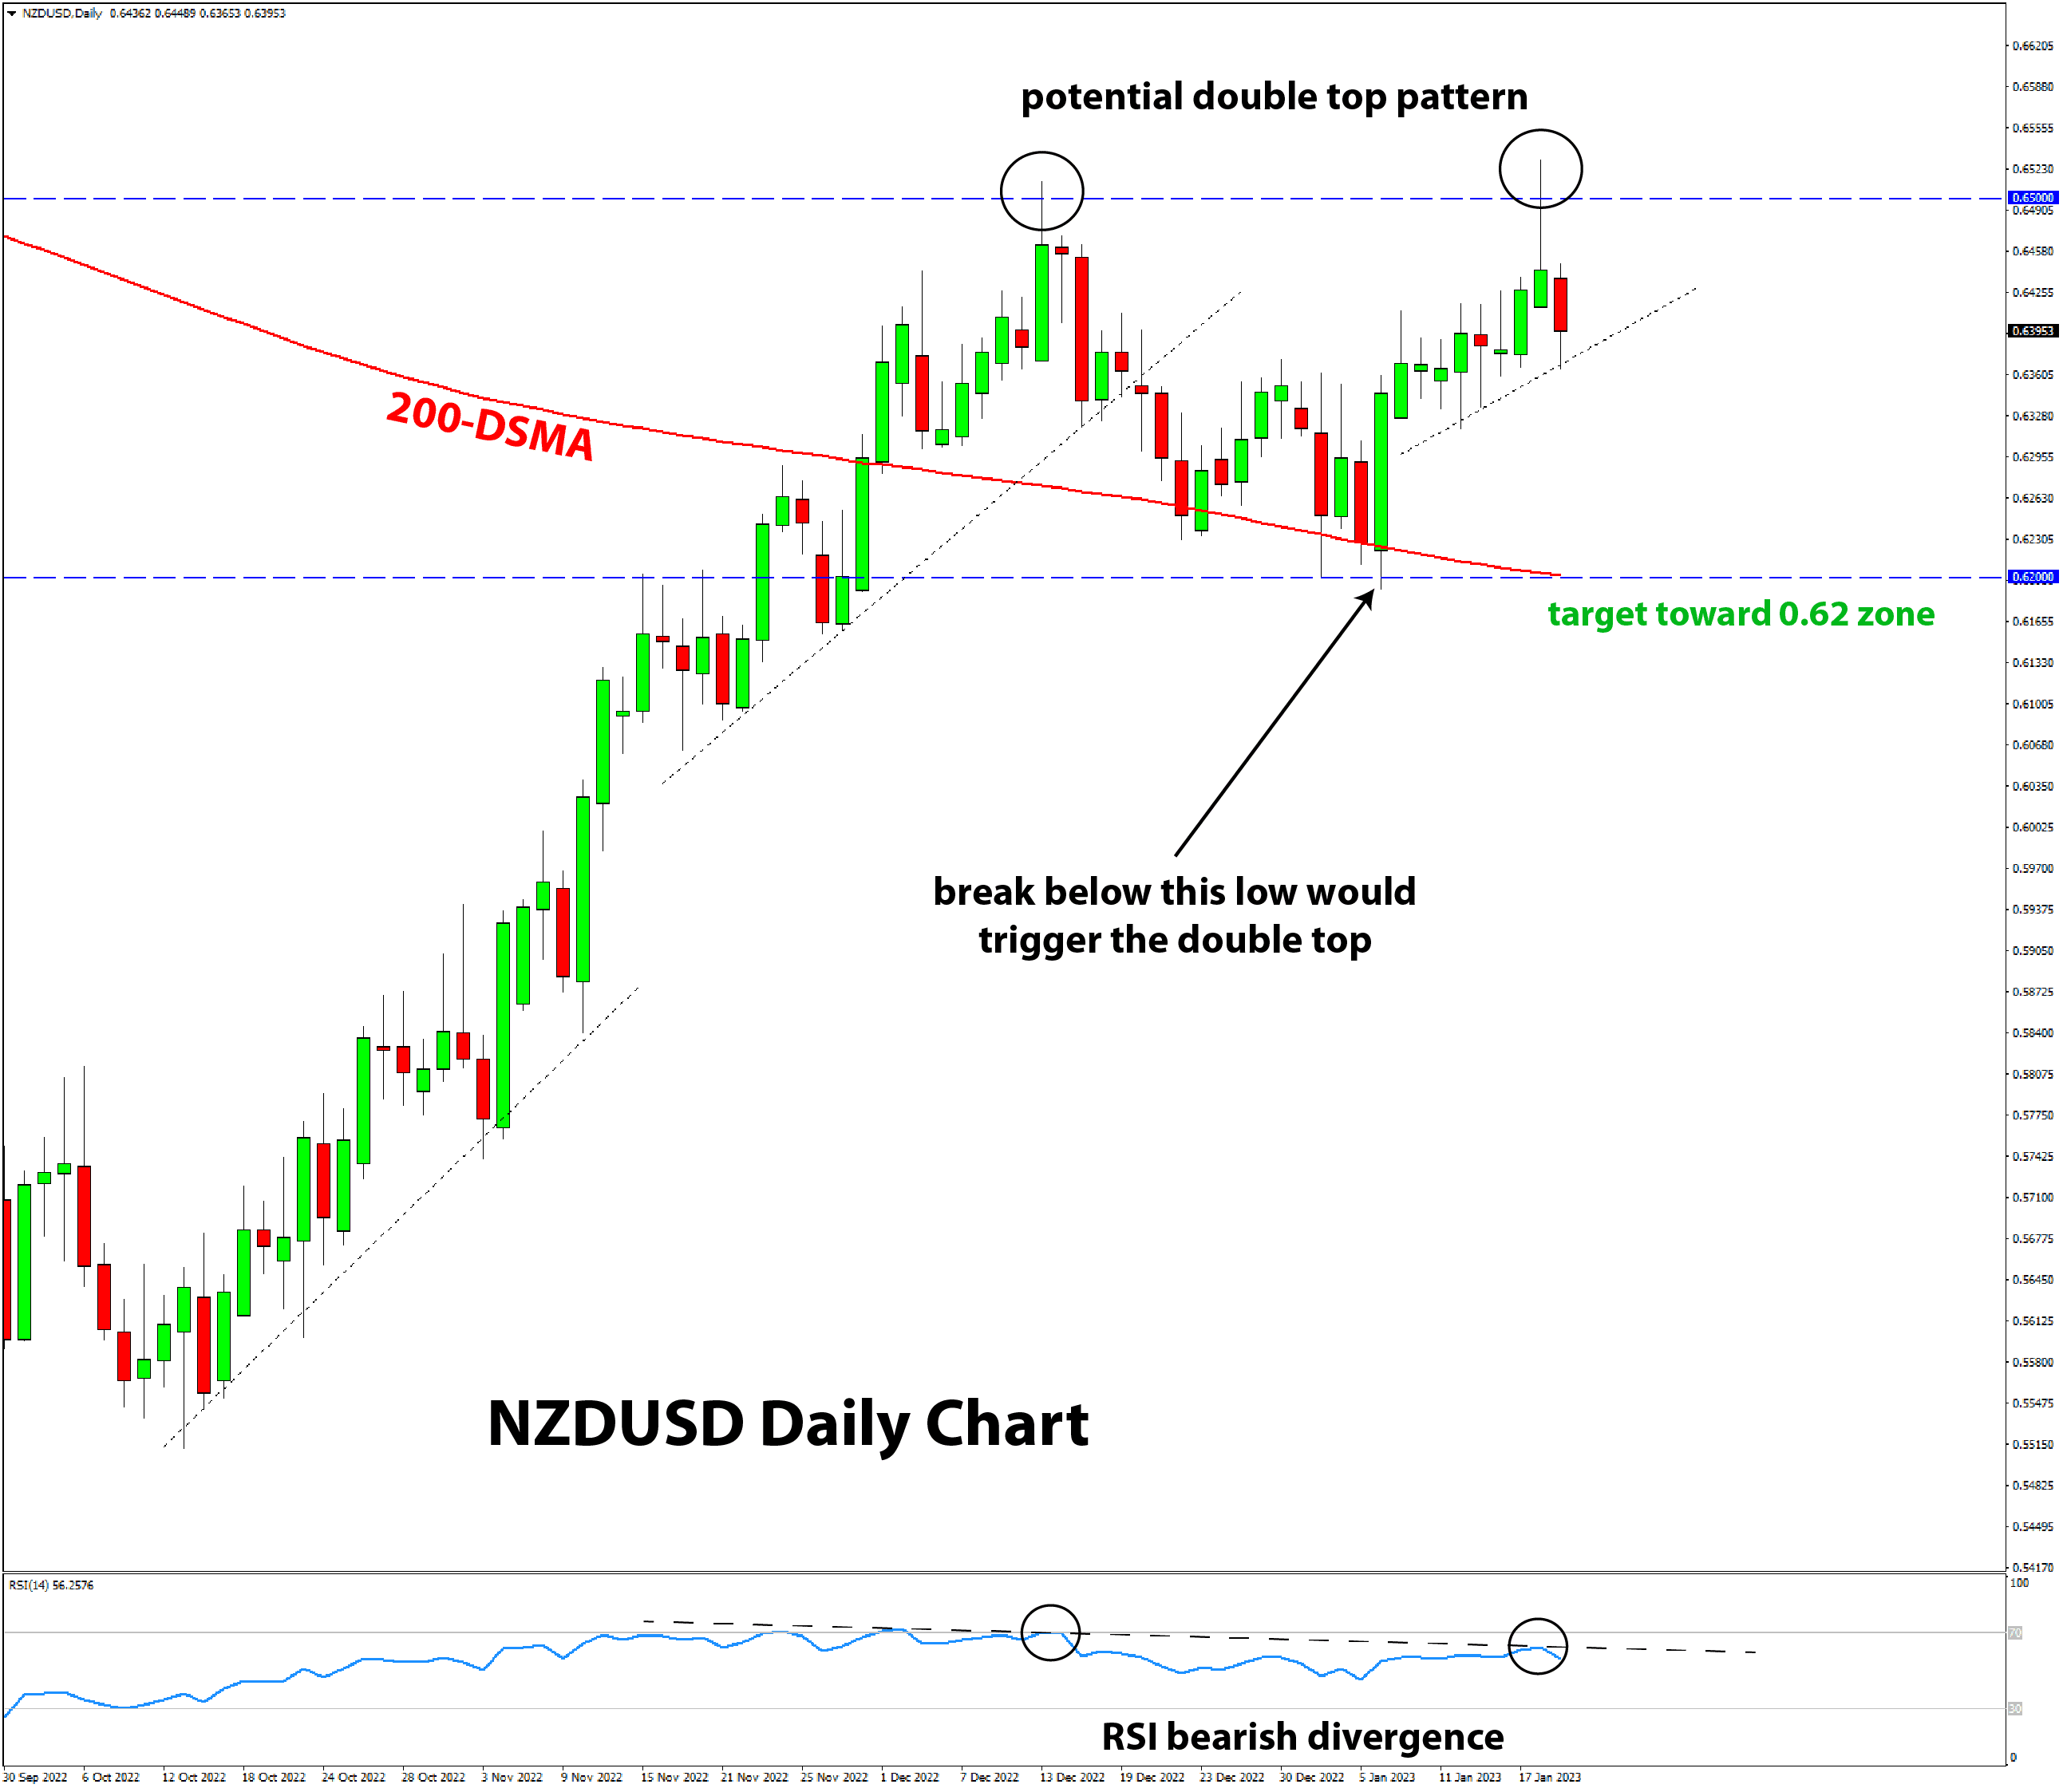 NZDUSD daily chart reversal